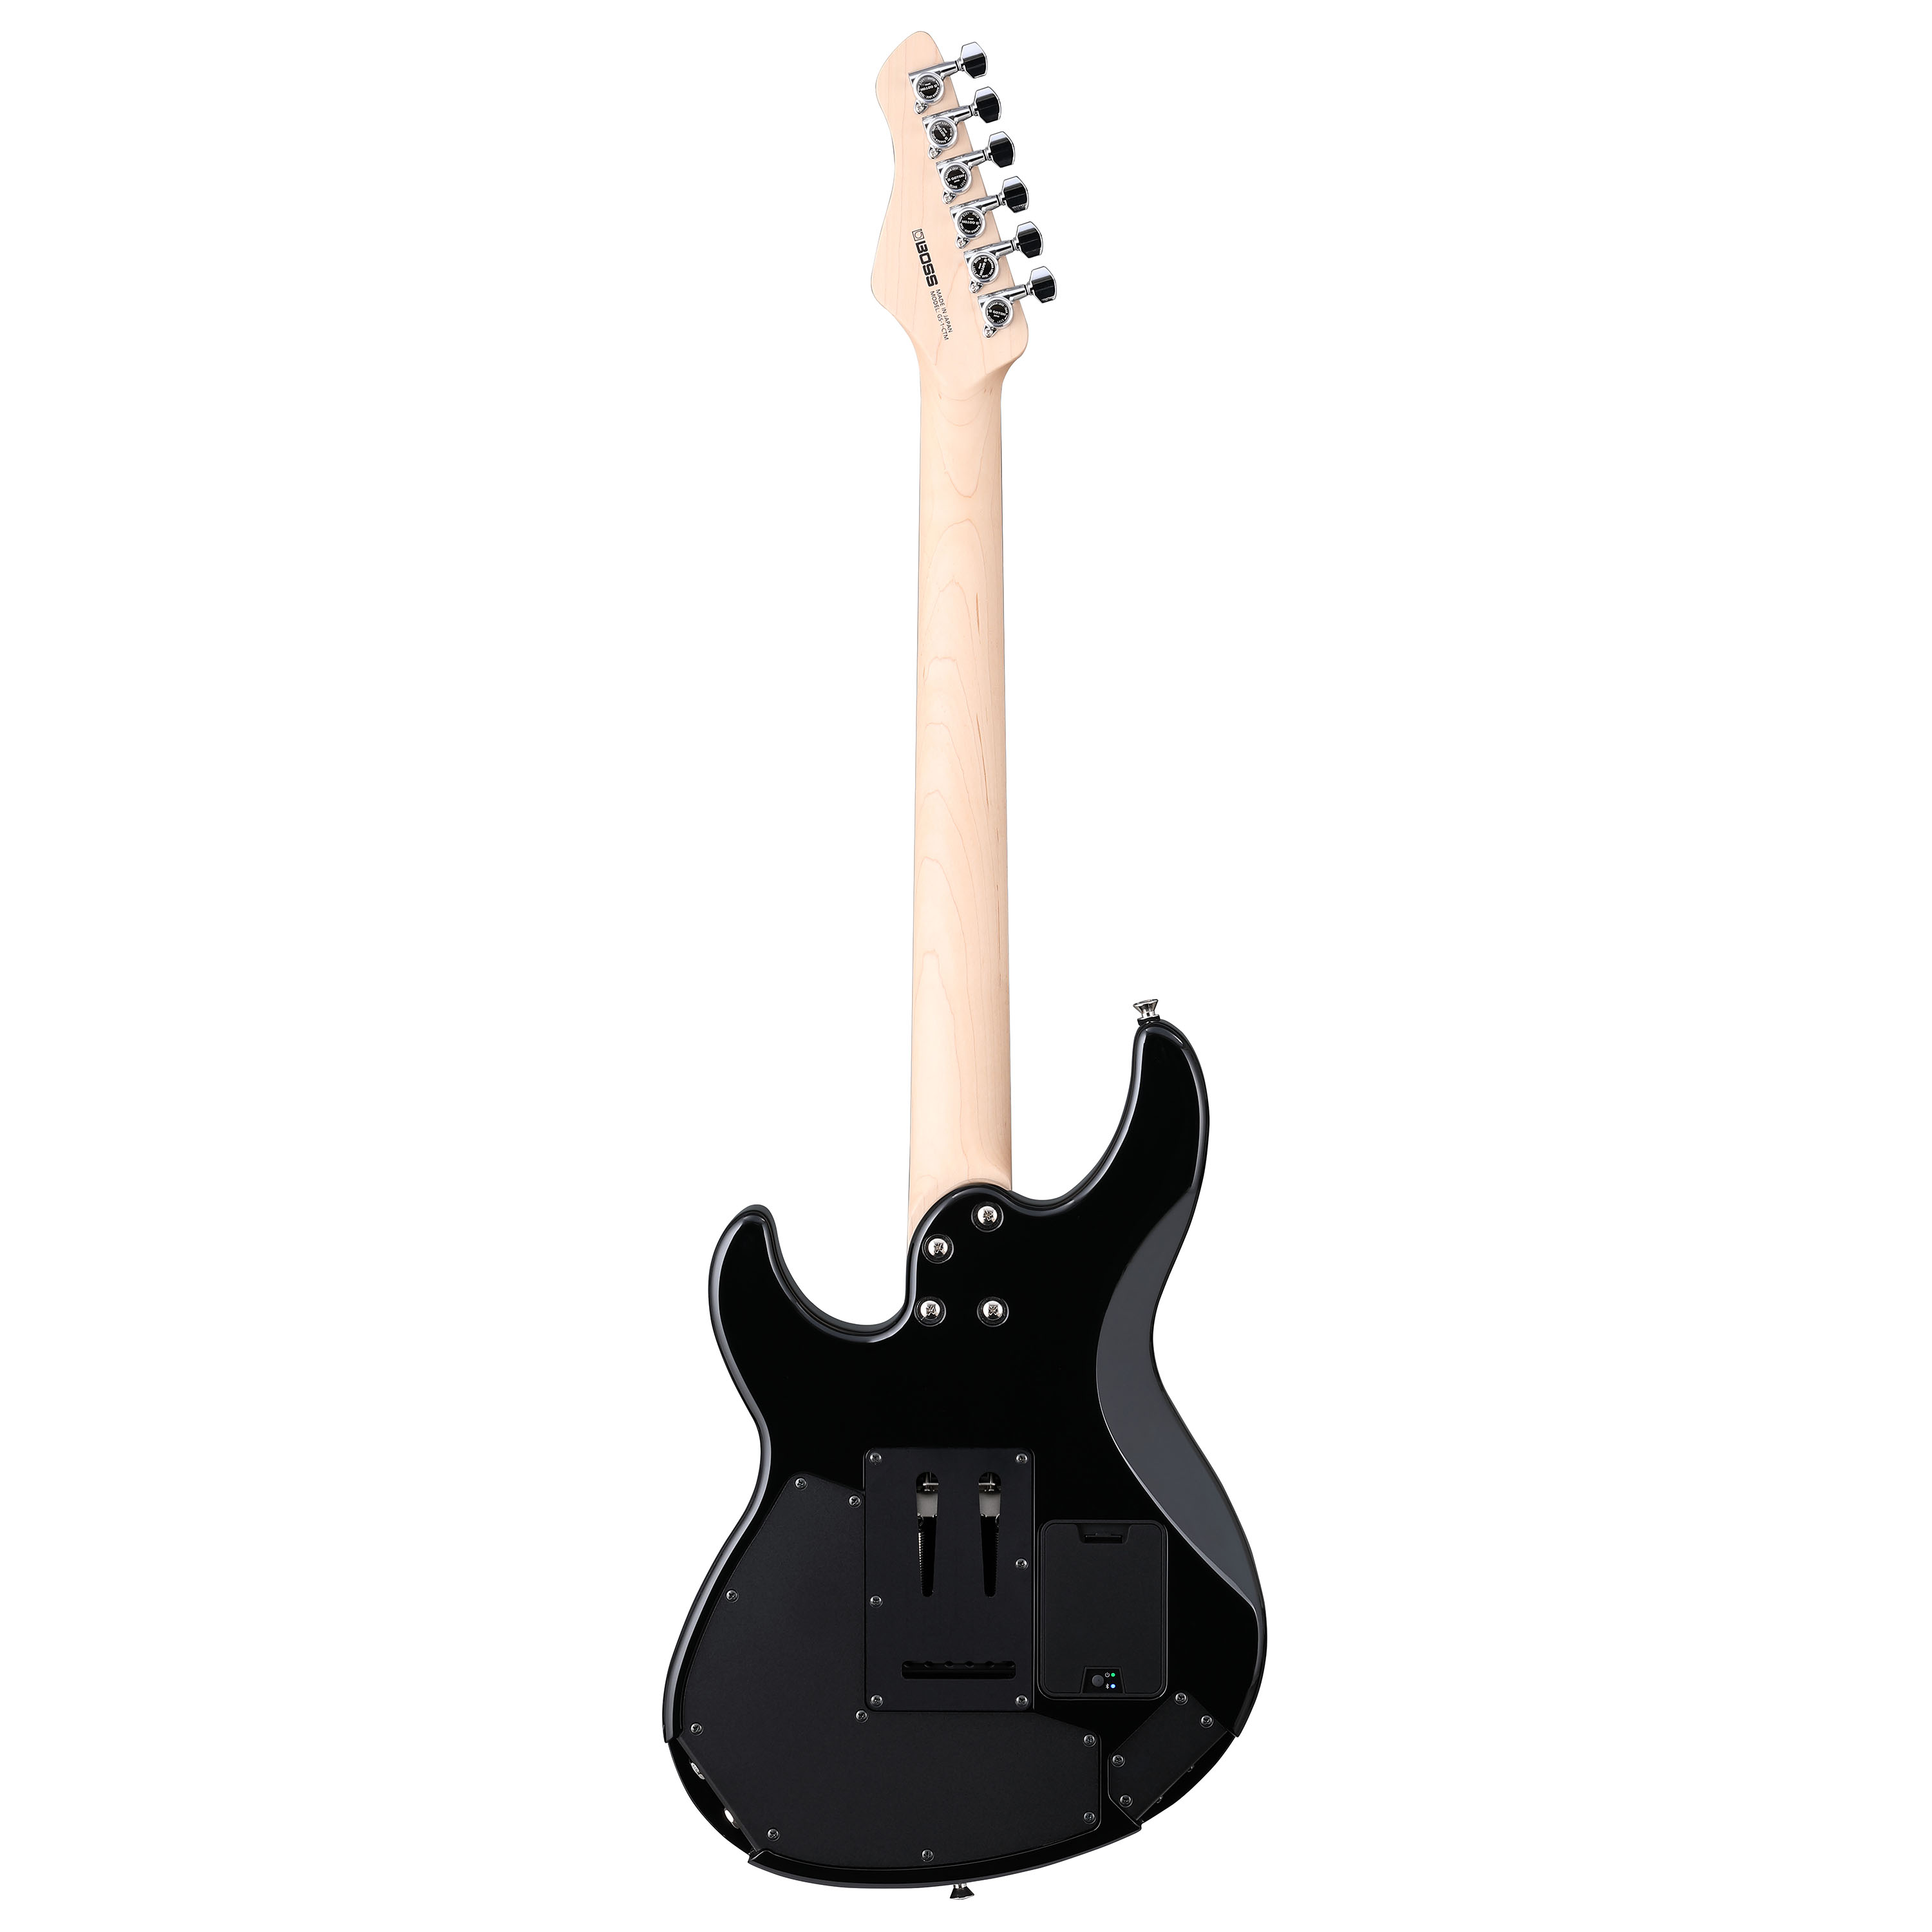 Boss Eurus Gs-1 Hh Trem Rw - Black - Guitarra eléctrica de modelización - Variation 2